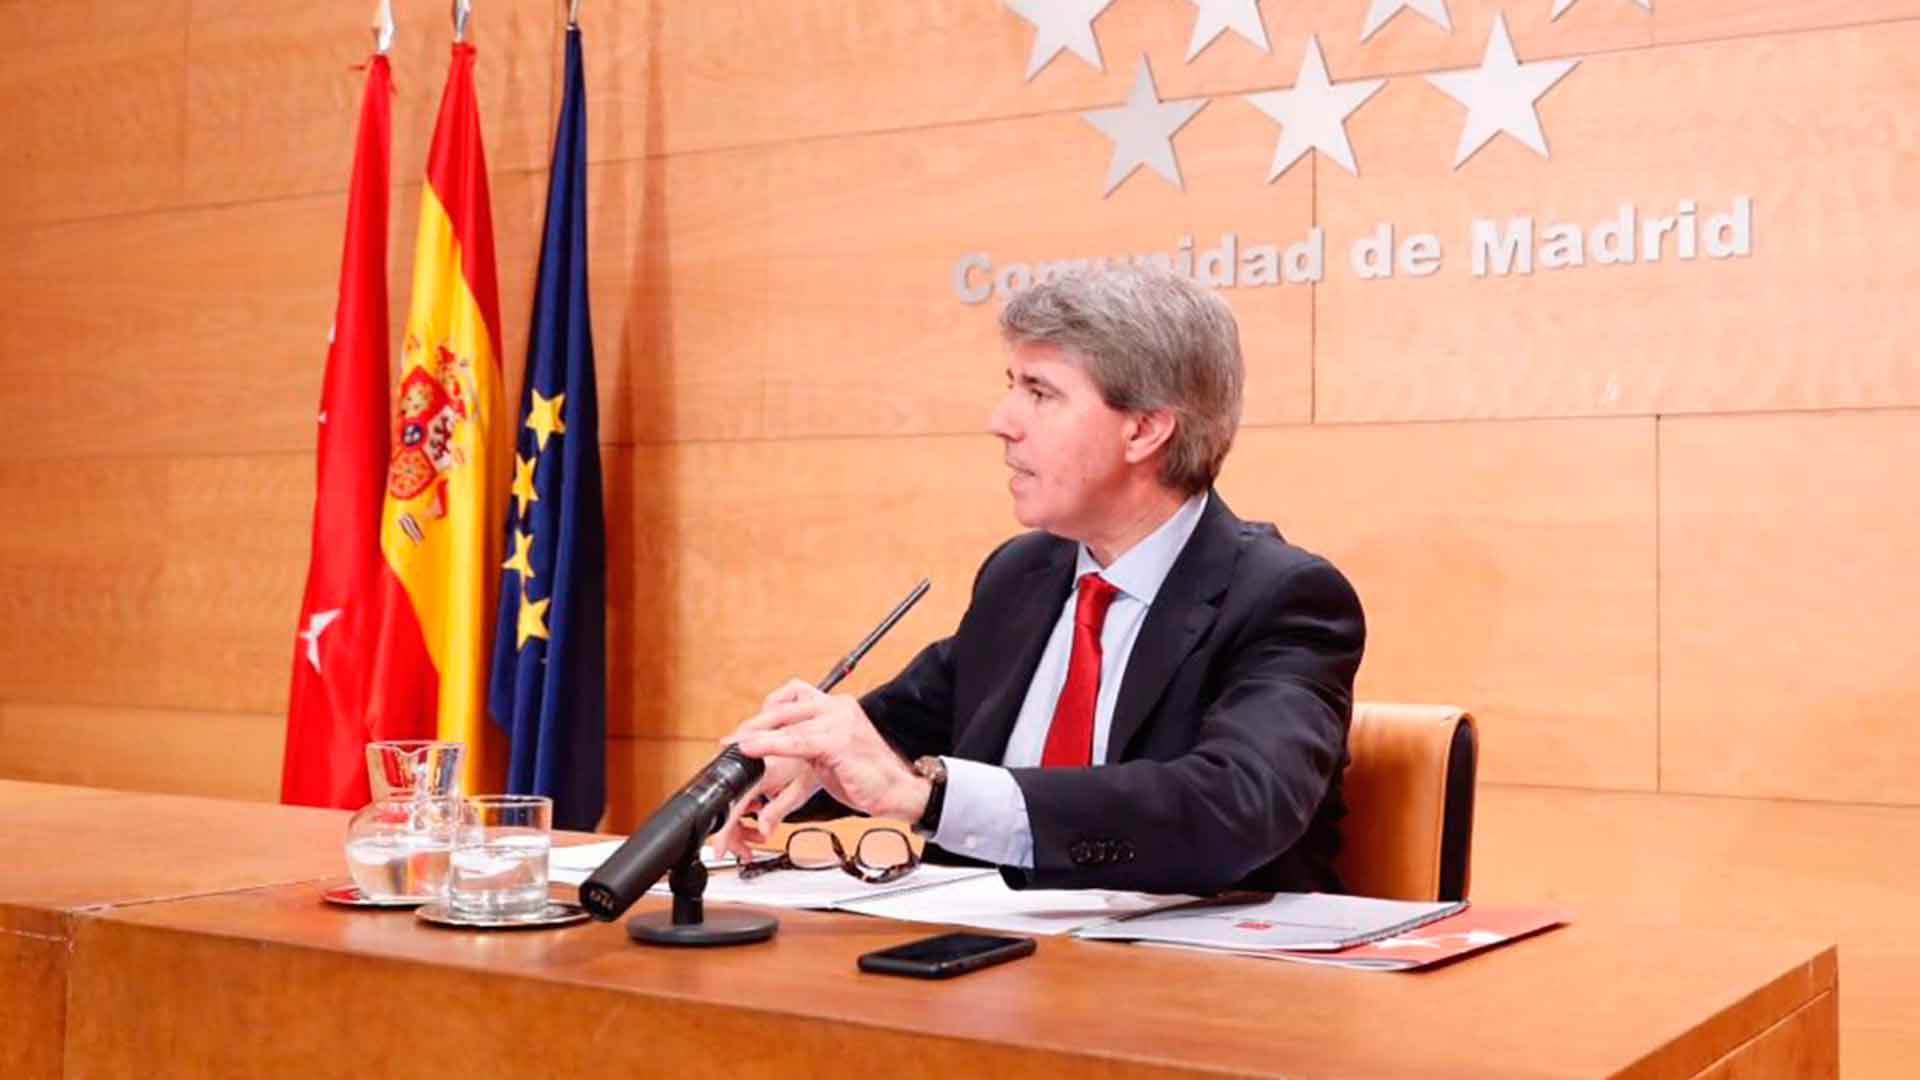 El presidente en funciones de Madrid asegura que Cifuentes no incumplió el código ético del PP